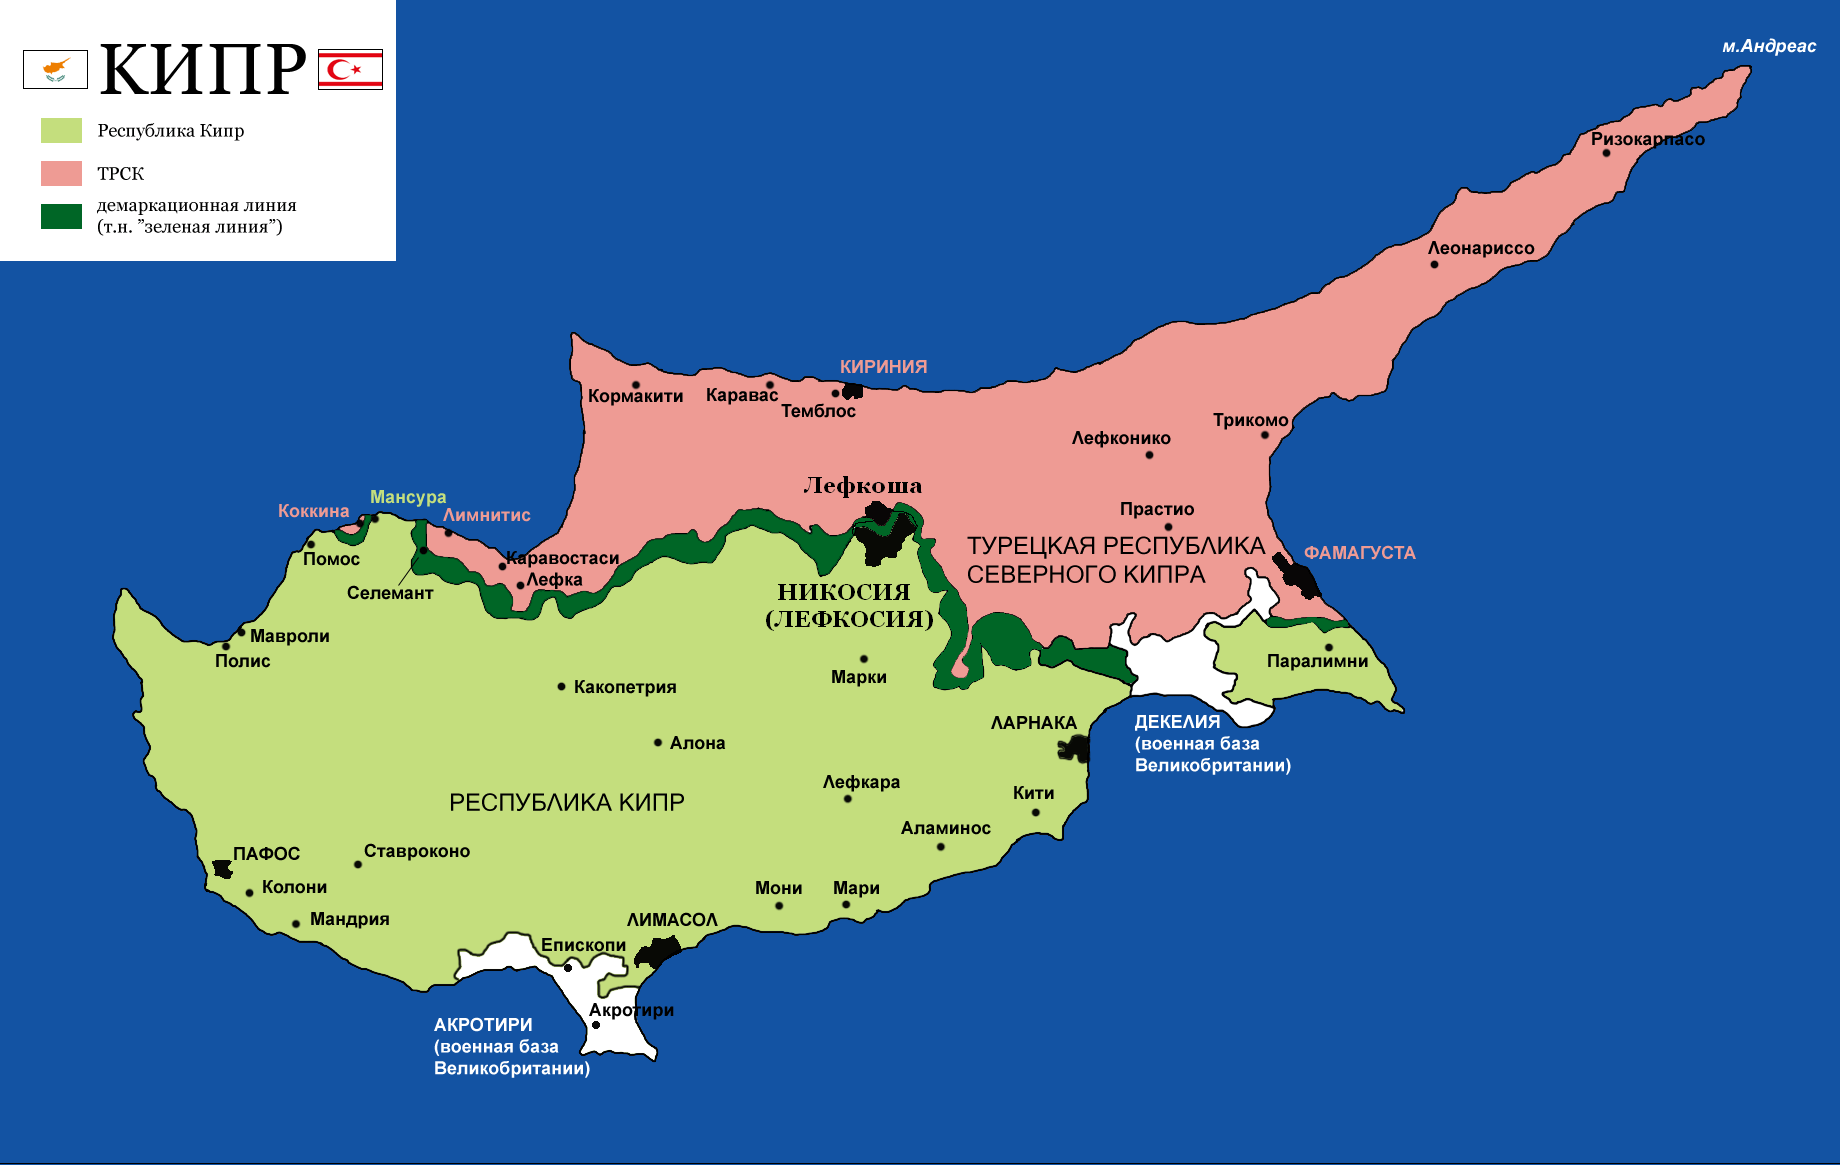 Кипр, у которого оккупированы 37% территории в Евросоюзе. Чем хуже Украина?   